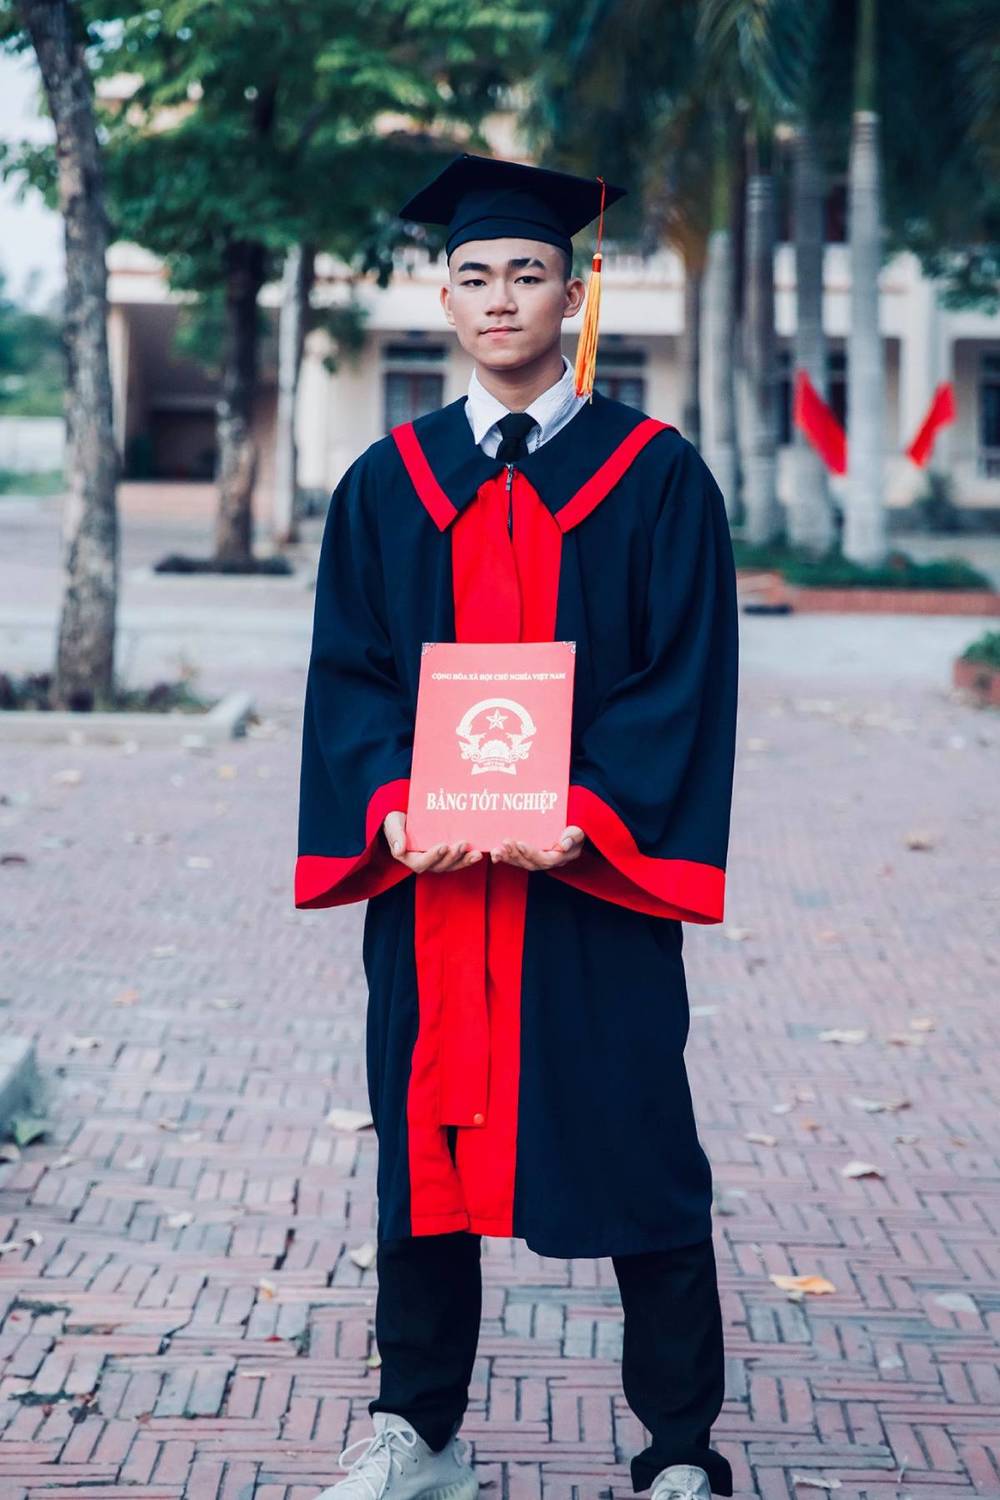  
Lê Long Daxua mới tốt nghiệp cấp 3 năm 2020. 